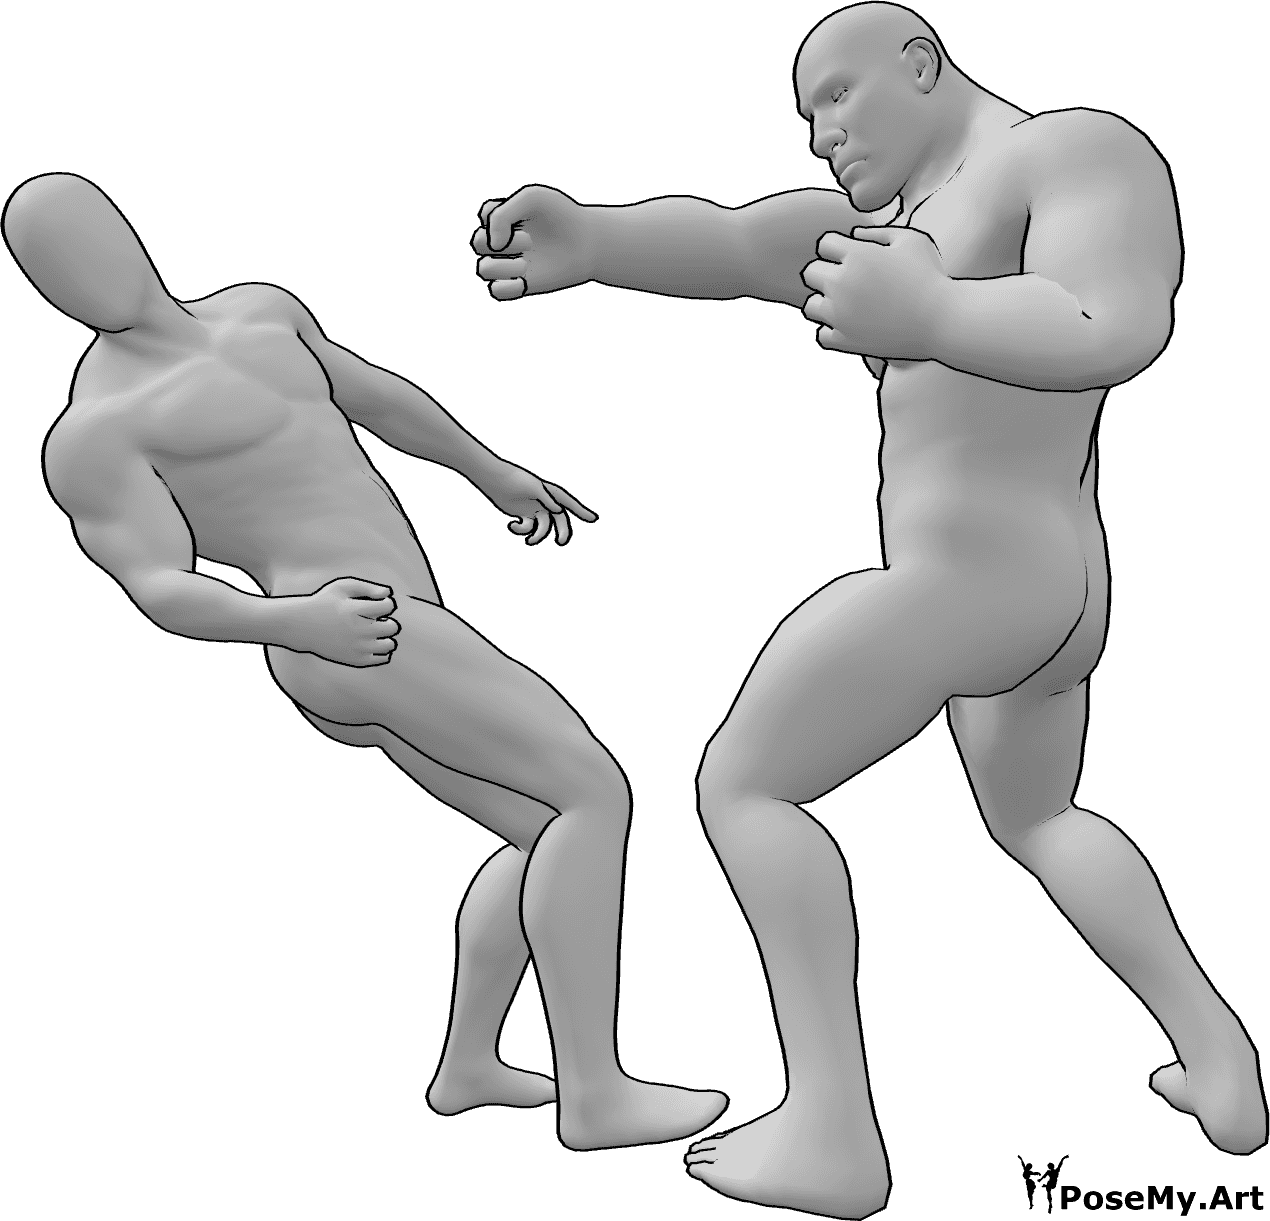 Référence des poses- Brute mâle pose de combat - Le mâle brut assomme l'autre mâle qui tombe à la renverse pose